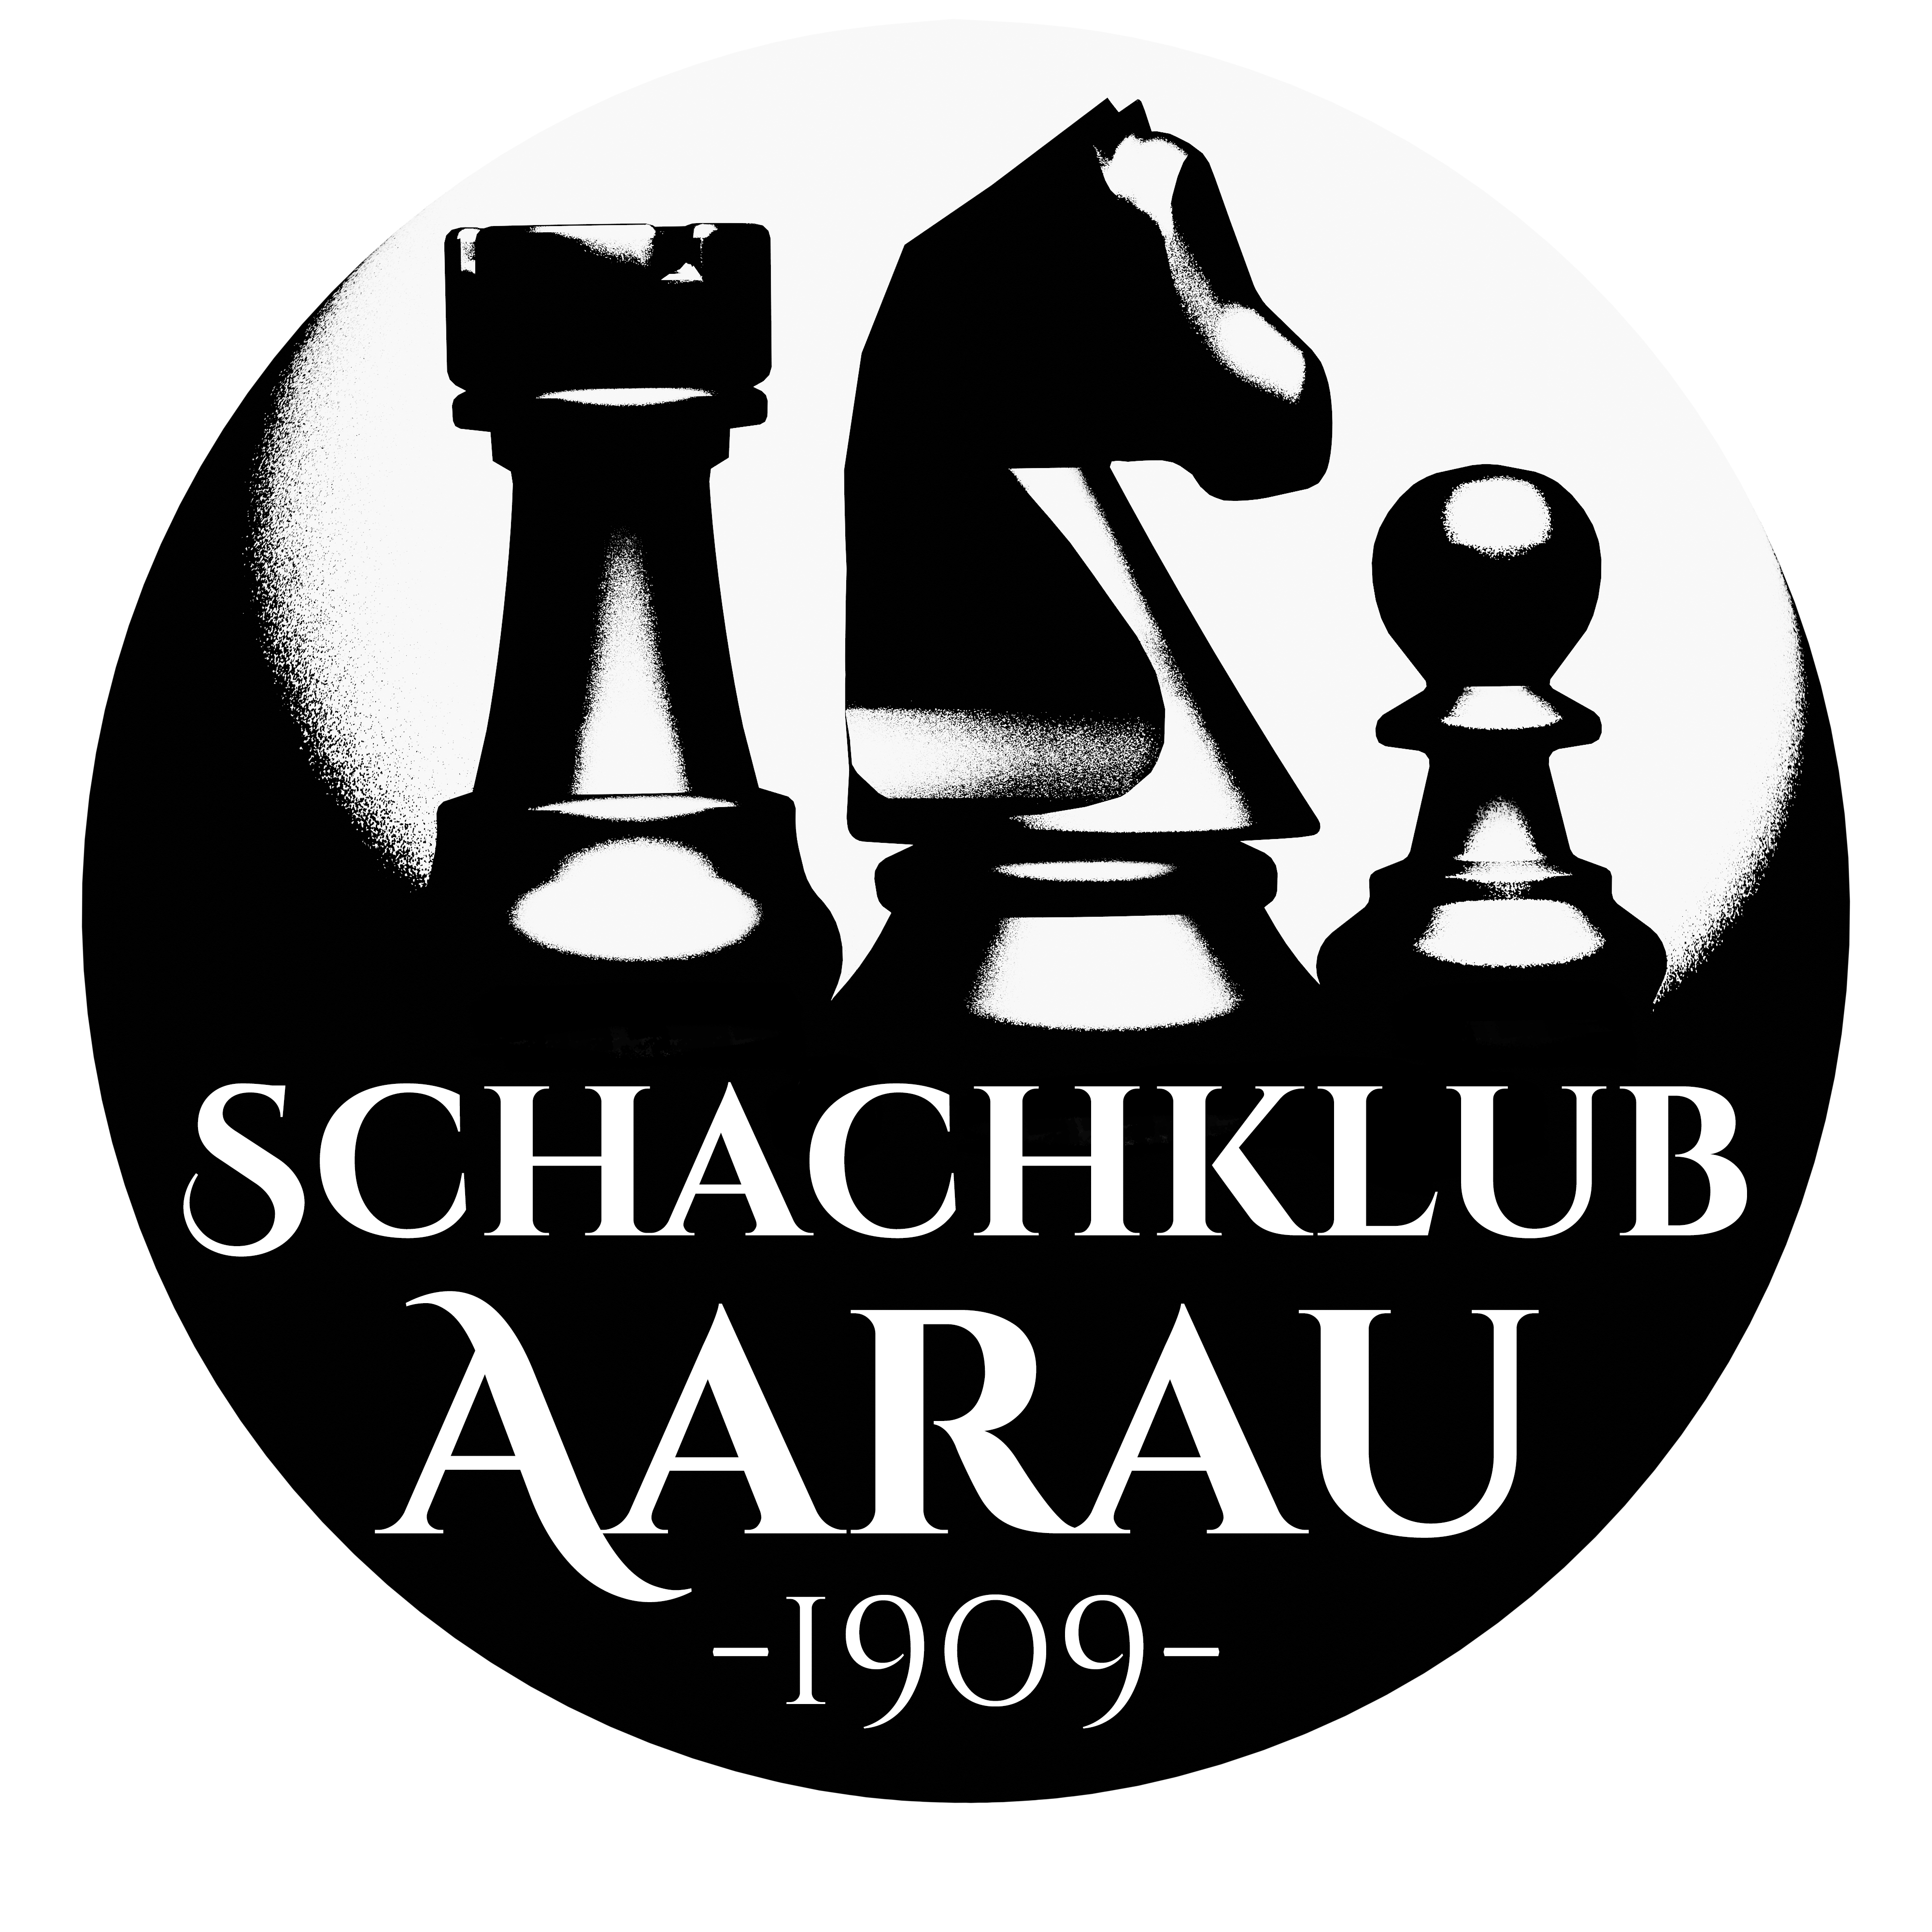 Schachklub Aarau